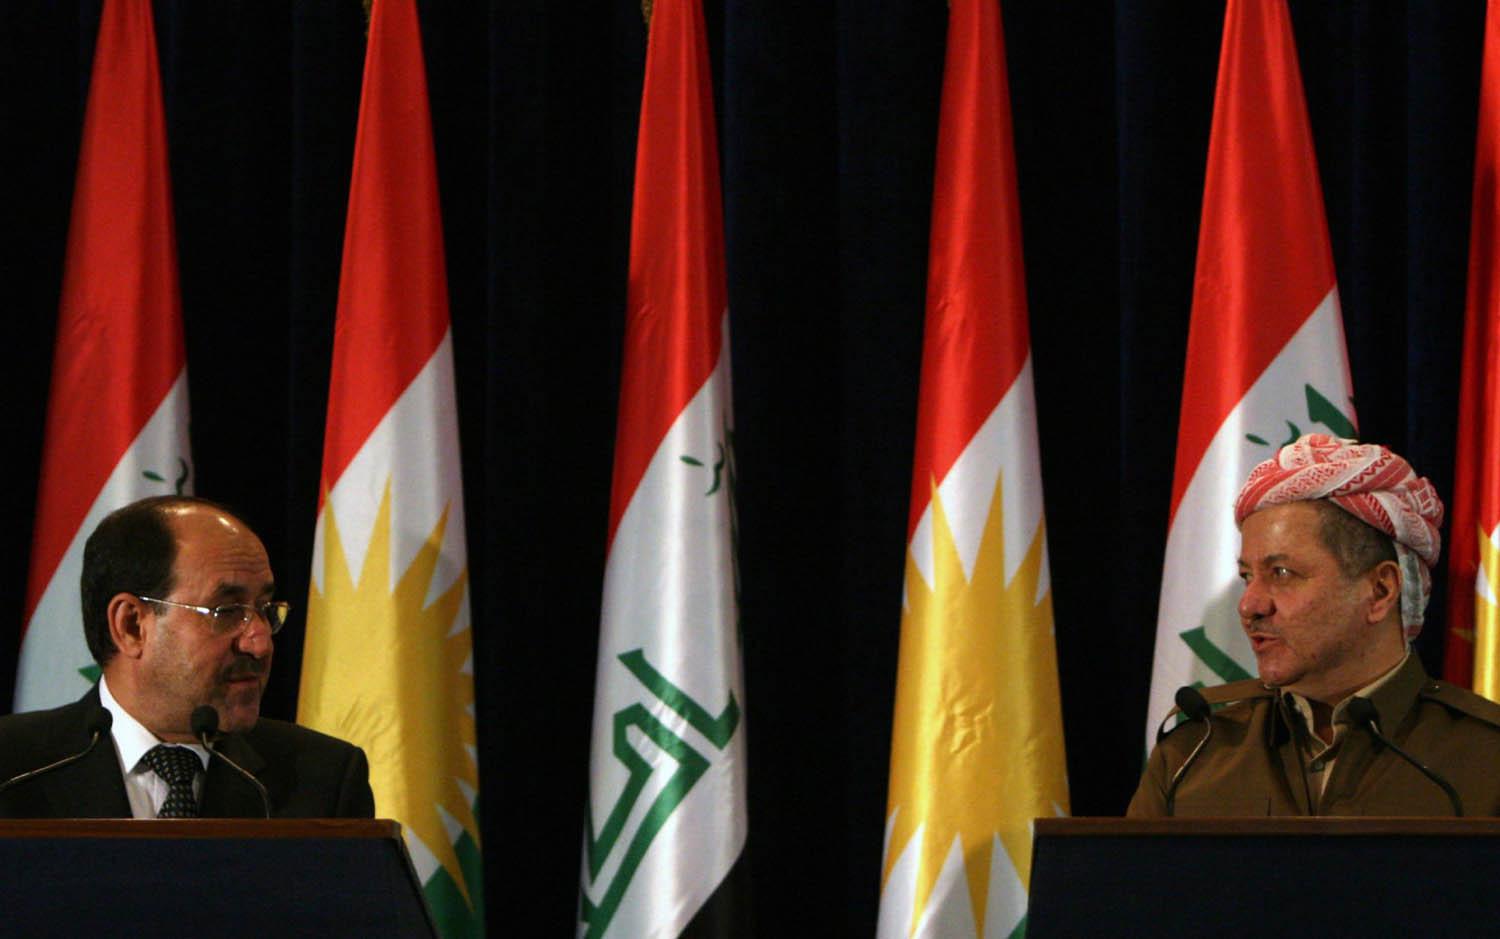 الزعيم الكردي مسعود بارزاني يستقبل رئيس الوزراء العراقي نوري المالكي (2013)